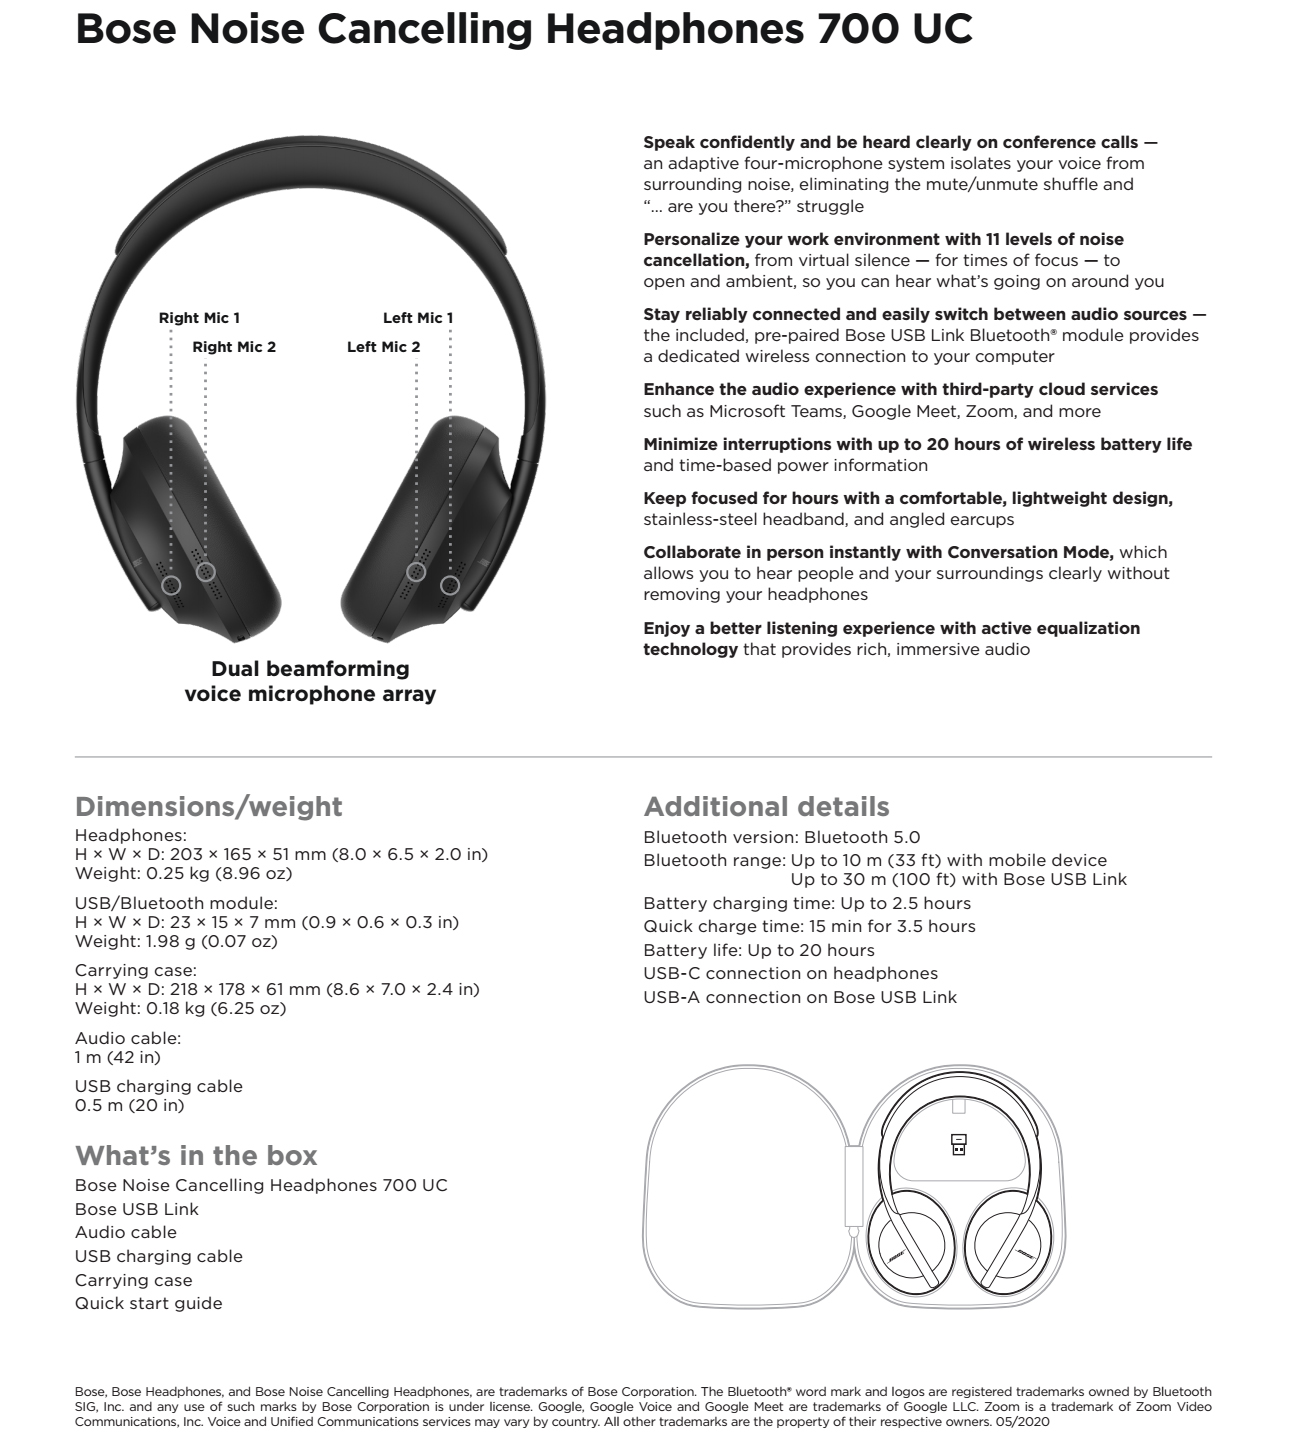 Fjendtlig Slutning Diplomati Bose Noise Cancelling Headphones 700 UC | Asianic Distributors Inc.  Philippines